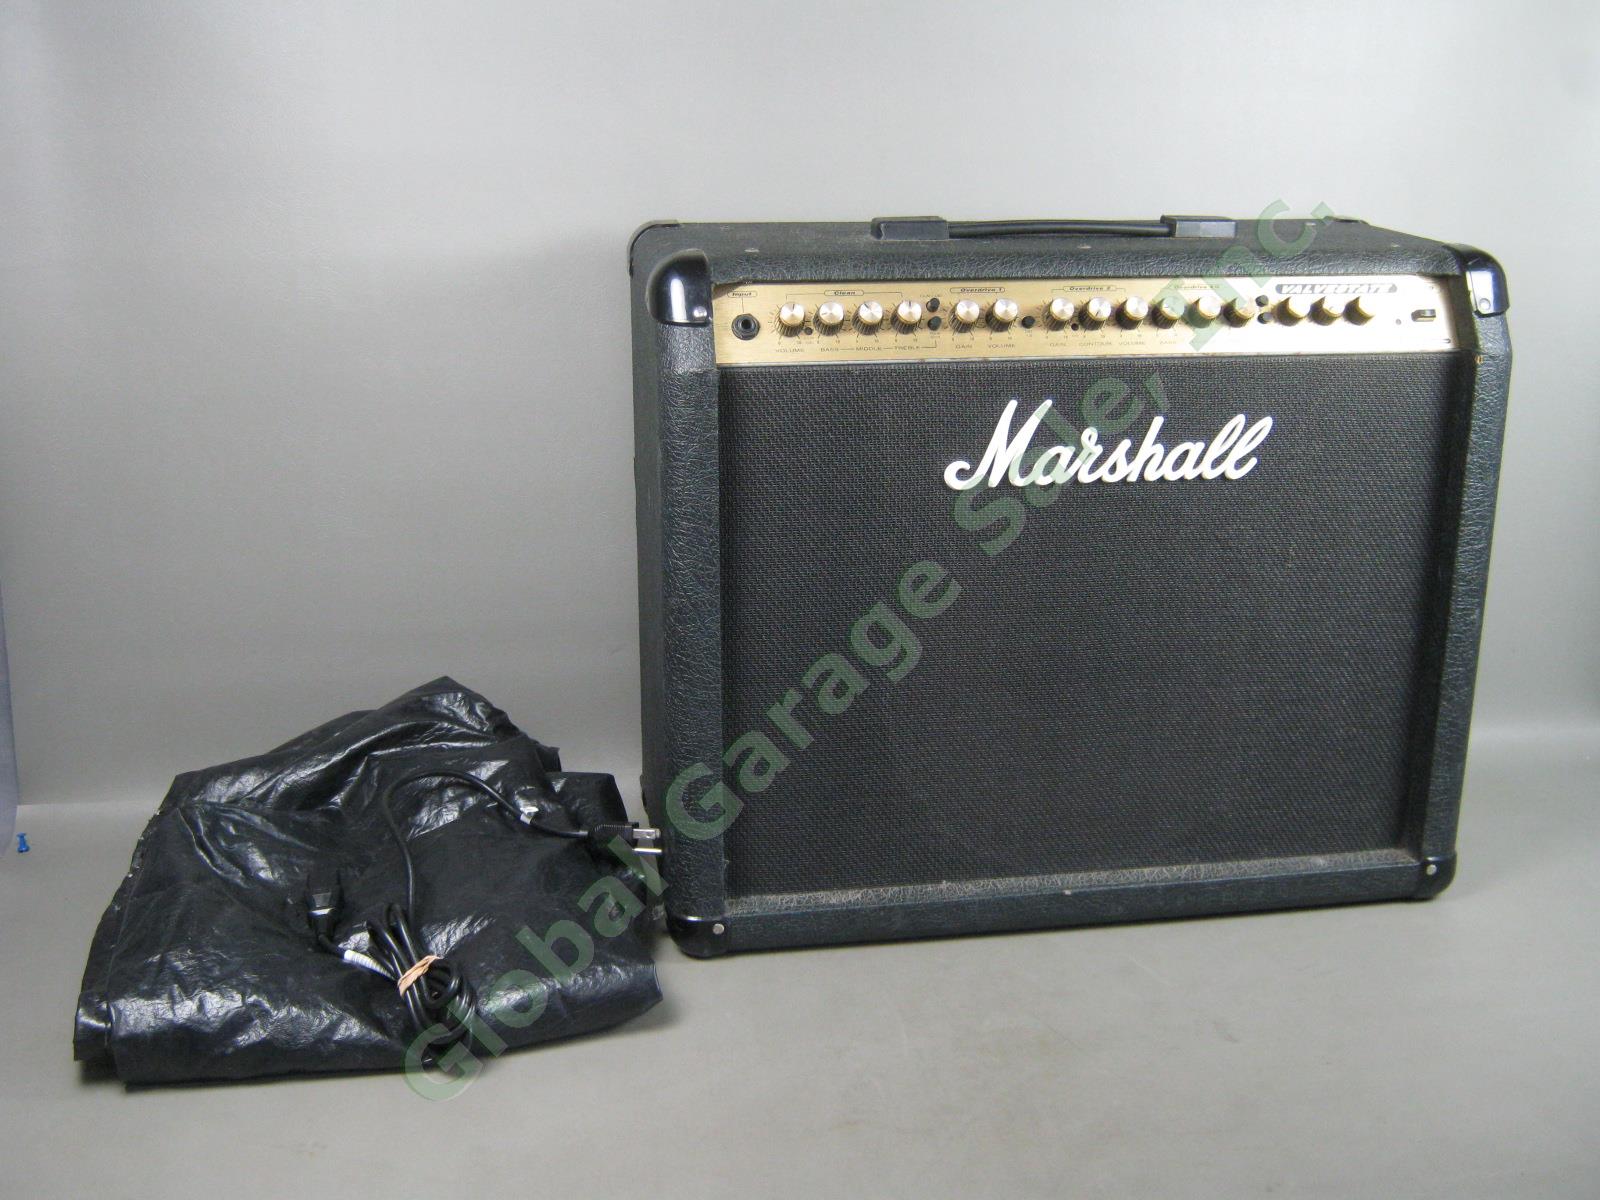 Marshall Valvestate VS100 Guitar Amplifier Amp Gold Back Series SPK 100 Speaker